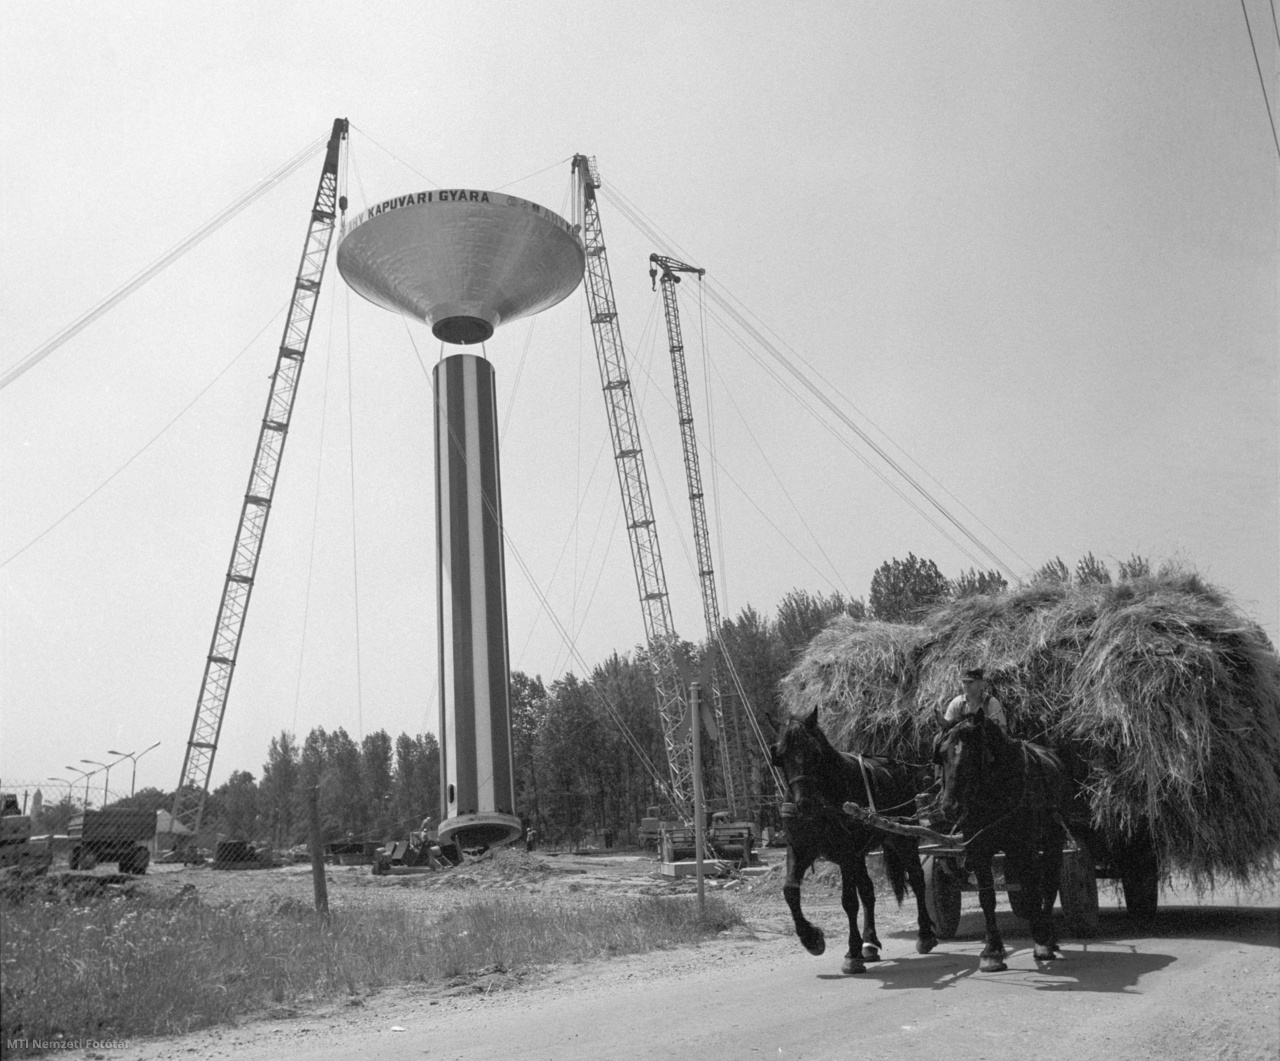 Kapuvár, 1978. június 30. Szénával megrakott lovas kocsi halad a Győr-Sopron megyei Állatforgalmi és Húsipari Vállalat kapuvári gyárának vízellátását szolgáló víztorony mellett, melyet az Építőipari Gépesítő Vállalat szakemberei állítanak fel egy különleges emelőszerkezettel. A hétszáz köbméteres, negyvennyolc méter magas és százharminchat tonna súlyú óriási víztorony a város vízellátásába is besegít majd.